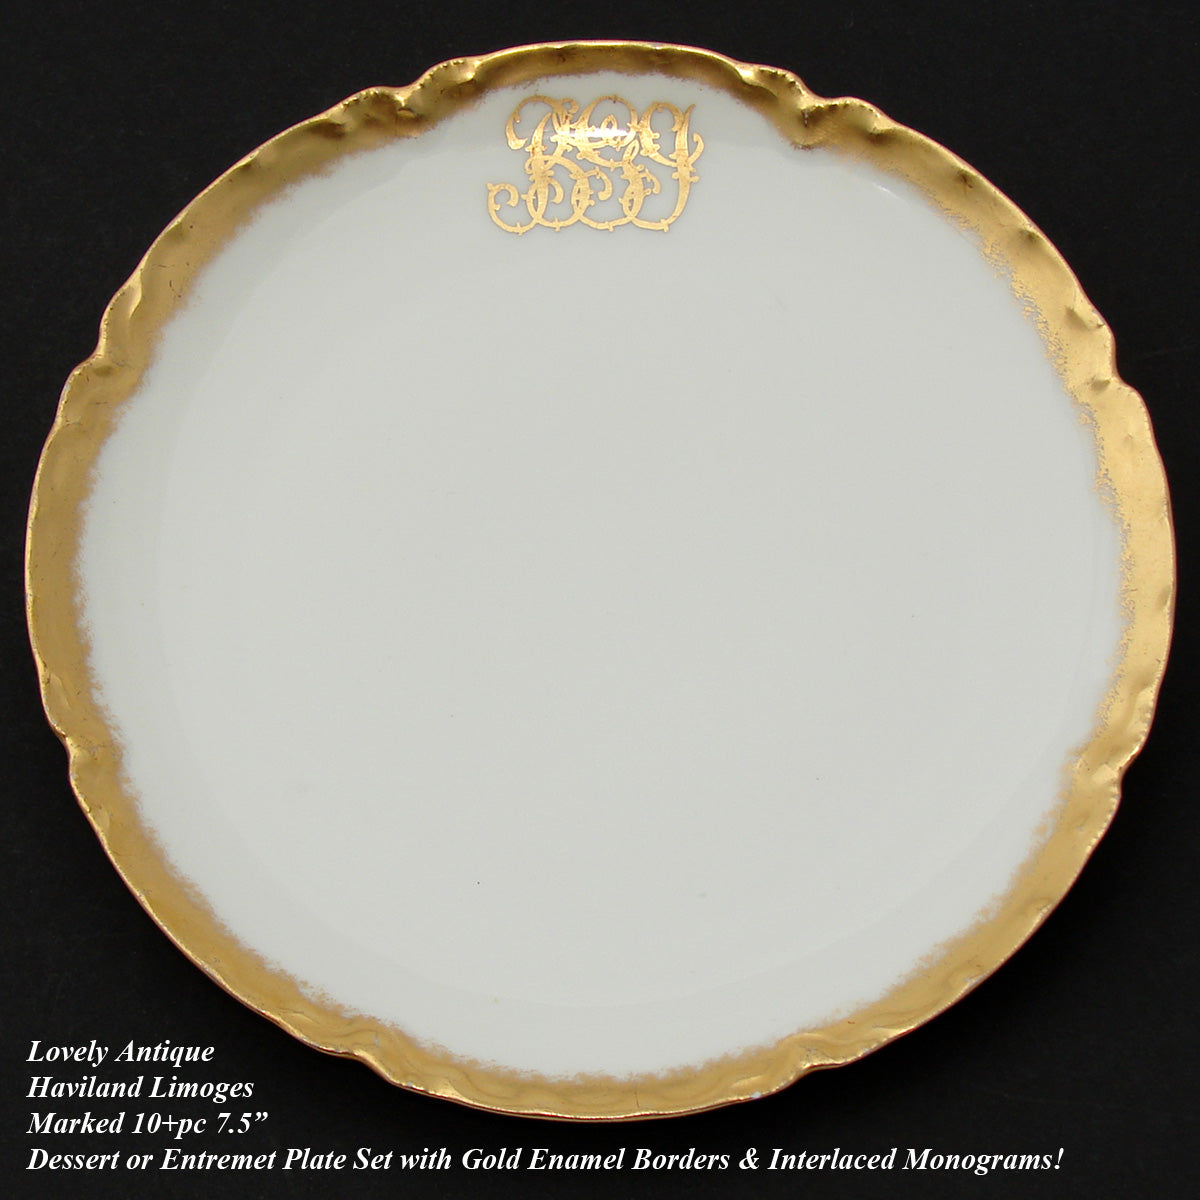 Fine Set of 10 Antique French Haviland Limoges Plates, 7.5" Salad or Dessert Set, Gold